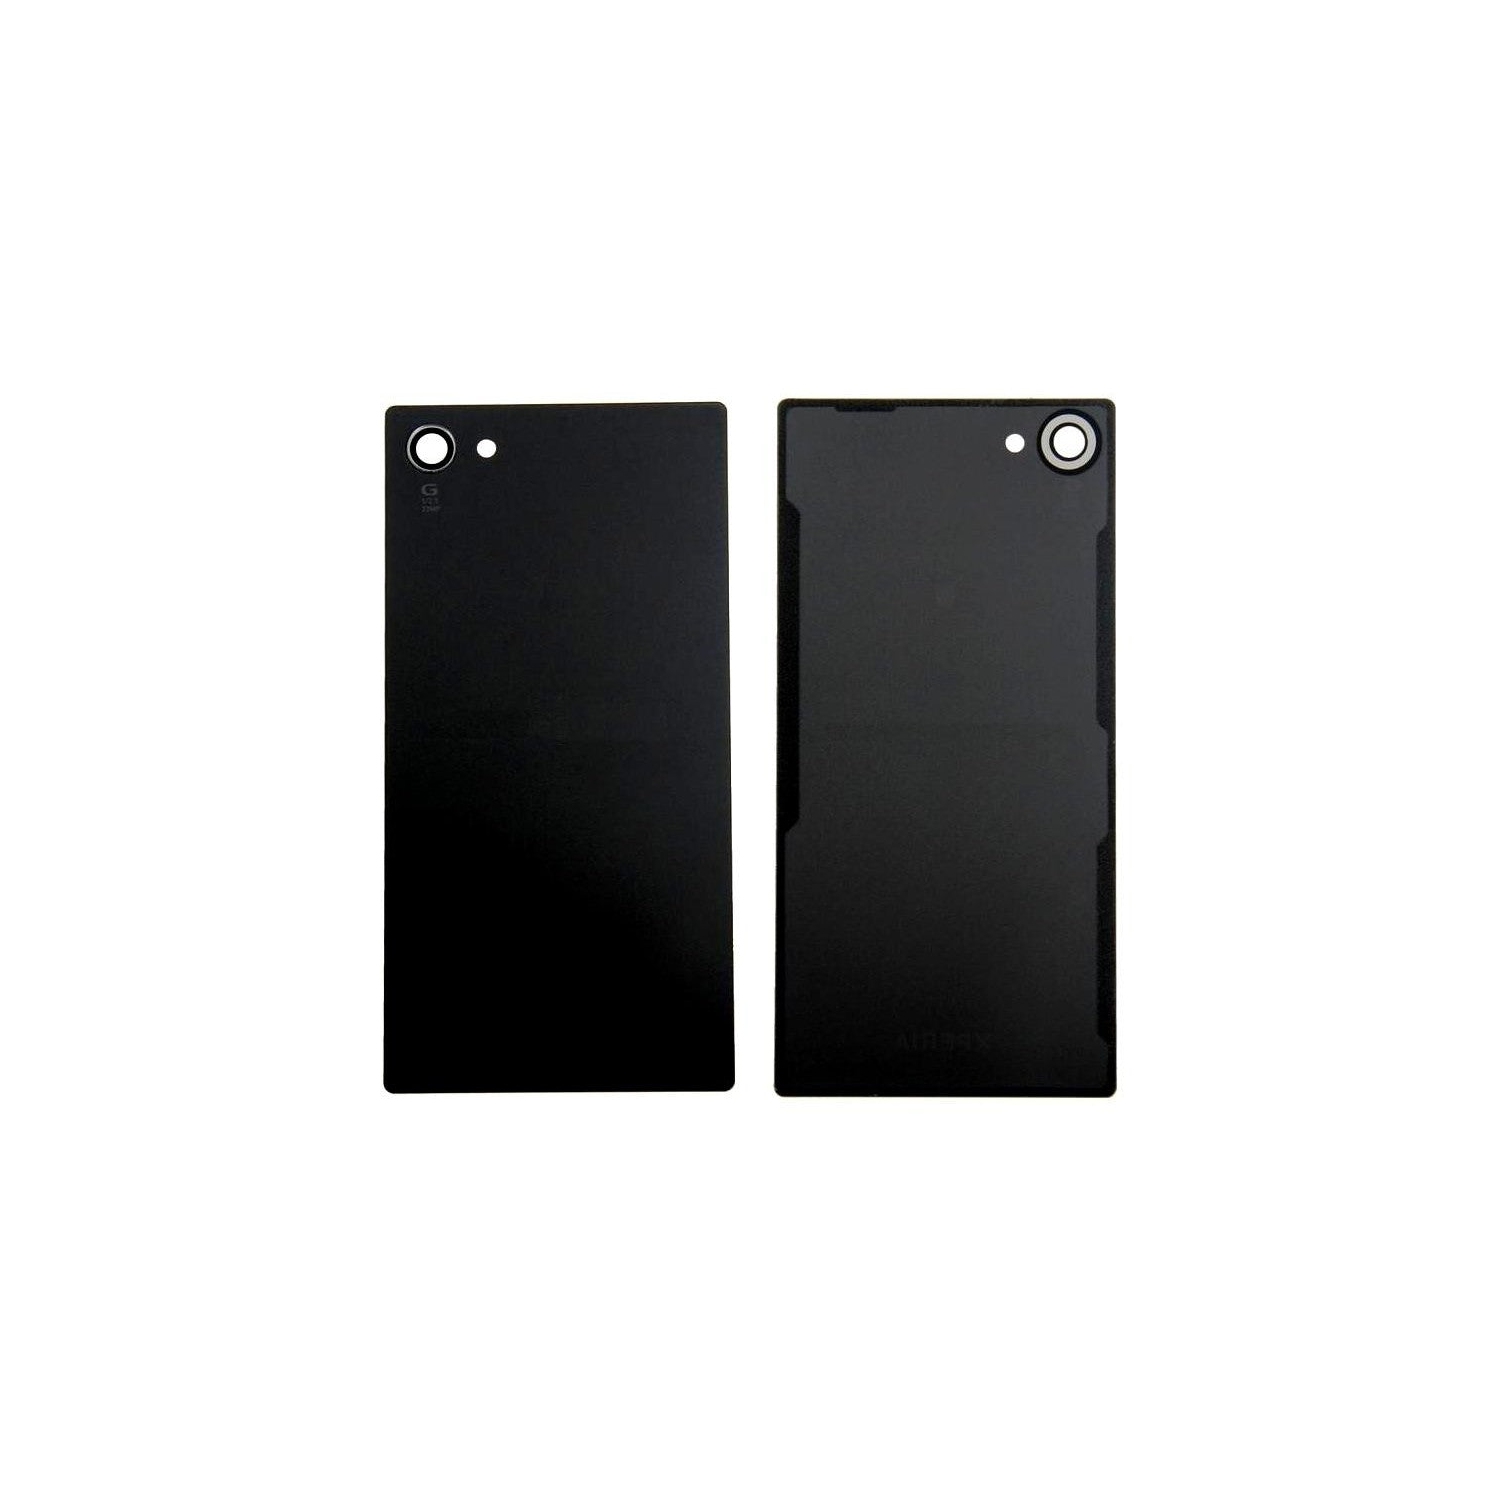 Back Battery Cover For Xperia Z5 Compact mini E5803 E5823 [Pro-Mobile]